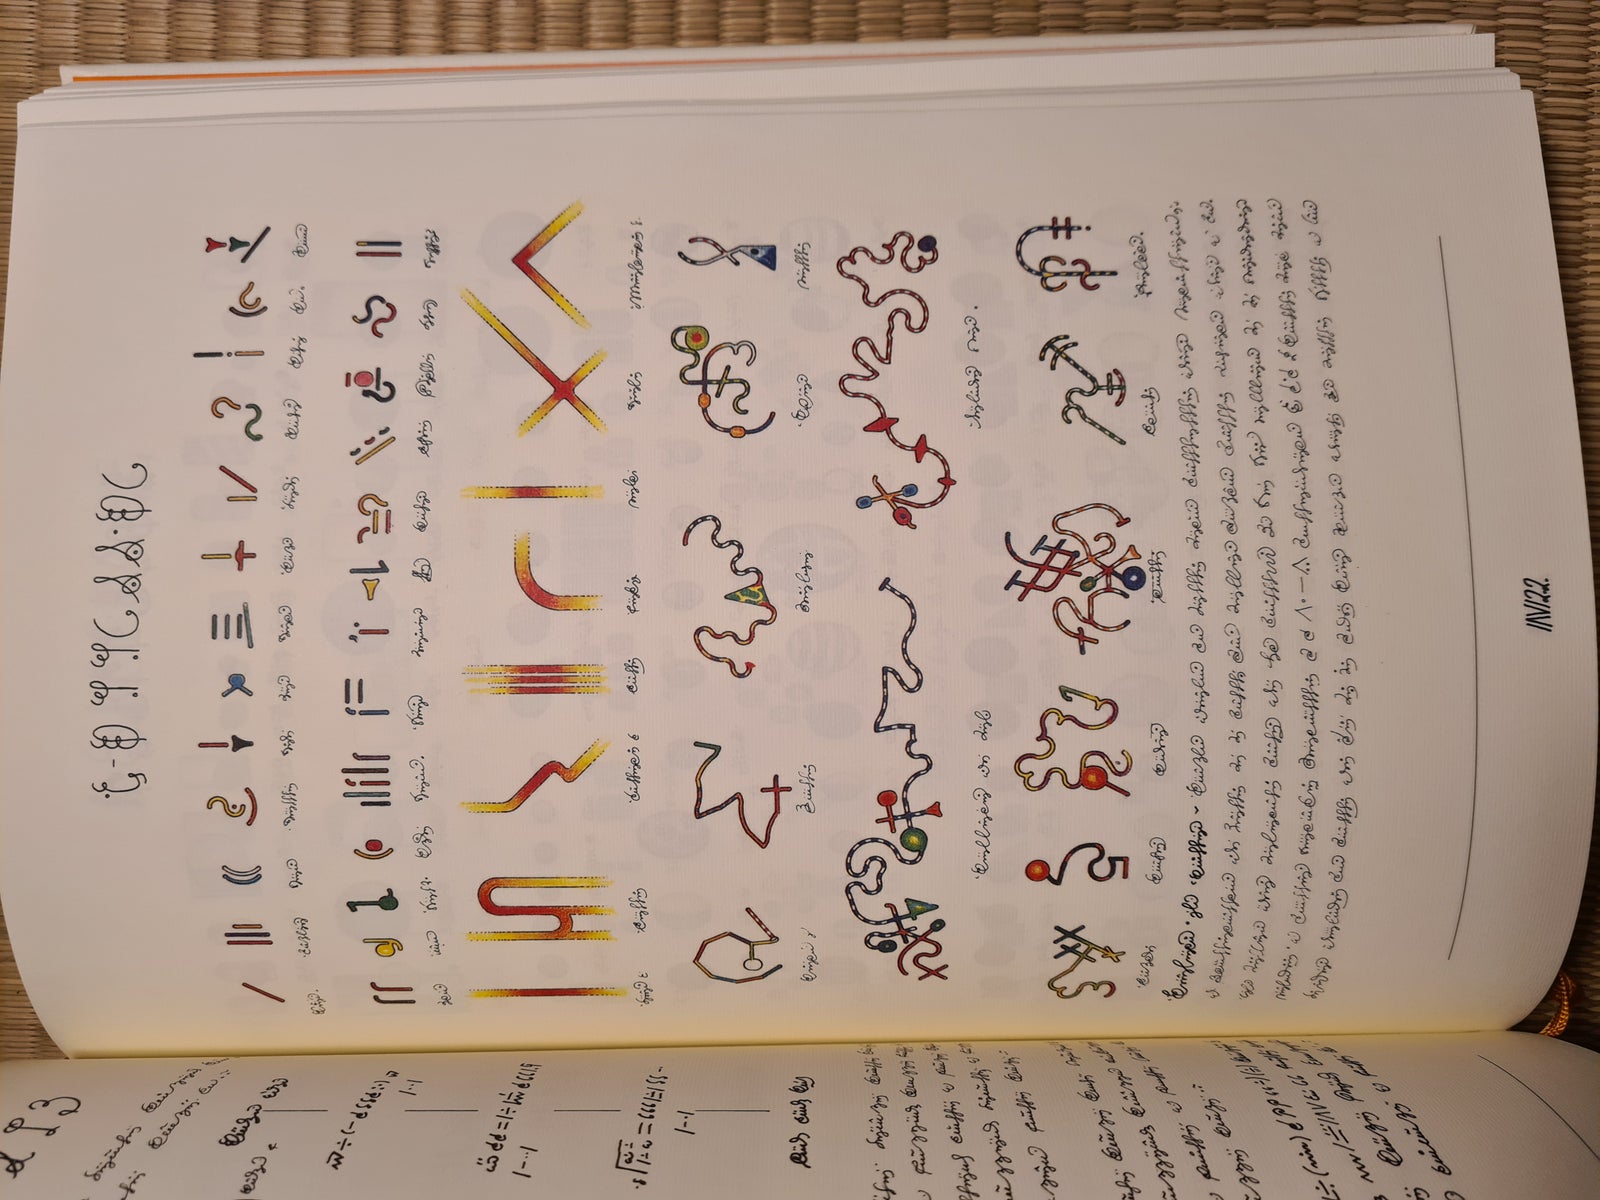 Codex Seraphinianus, Luigi Serafini, anden bog